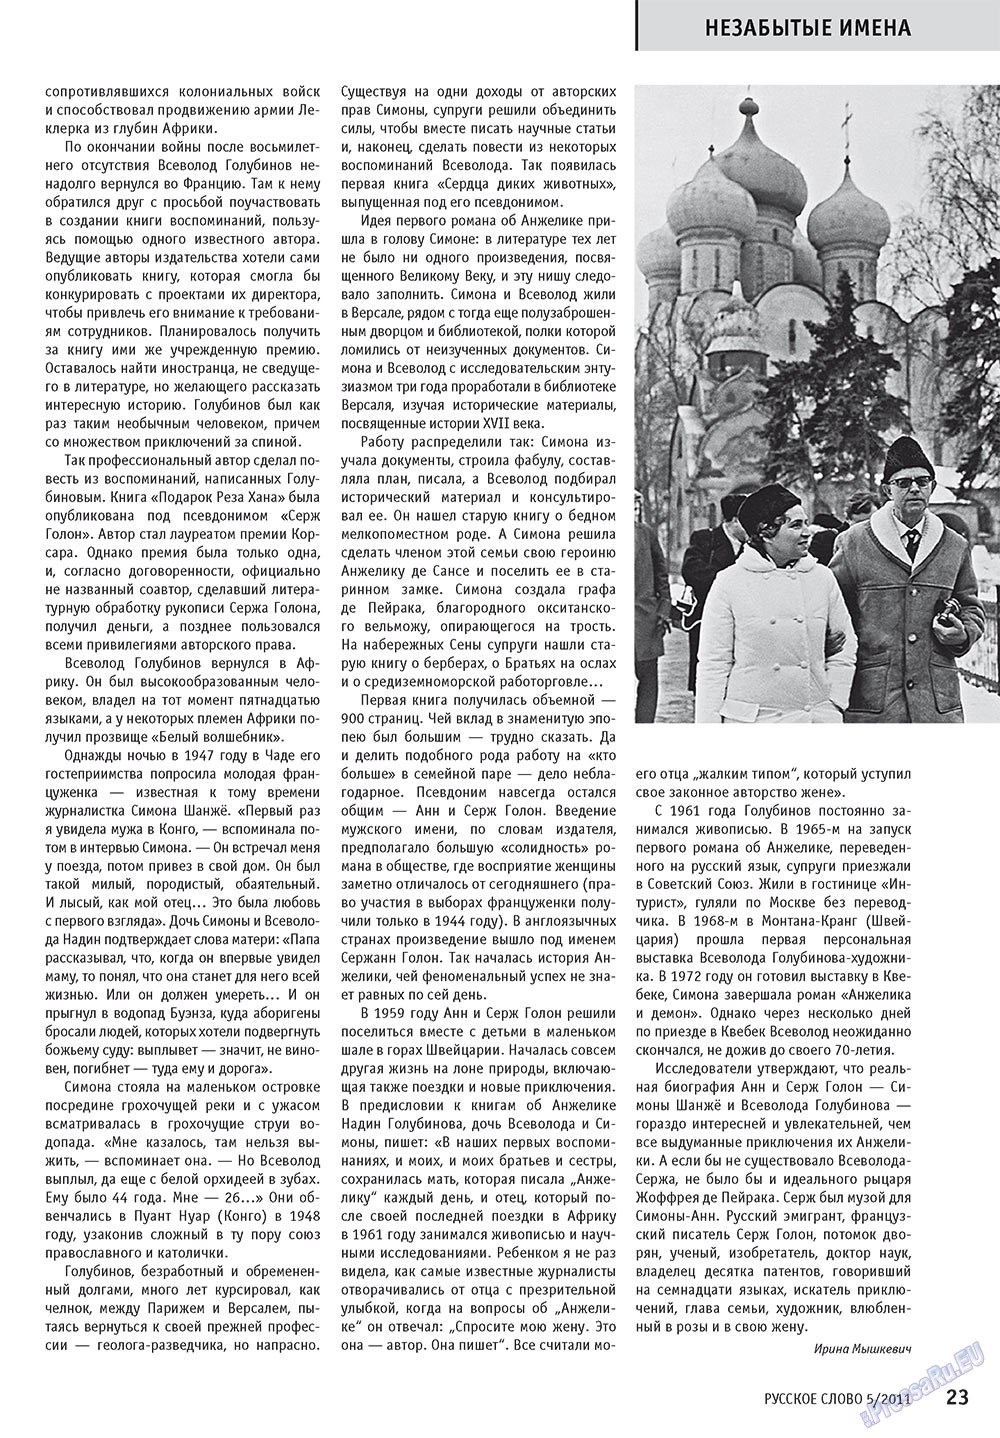 Русское слово, журнал. 2011 №5 стр.25